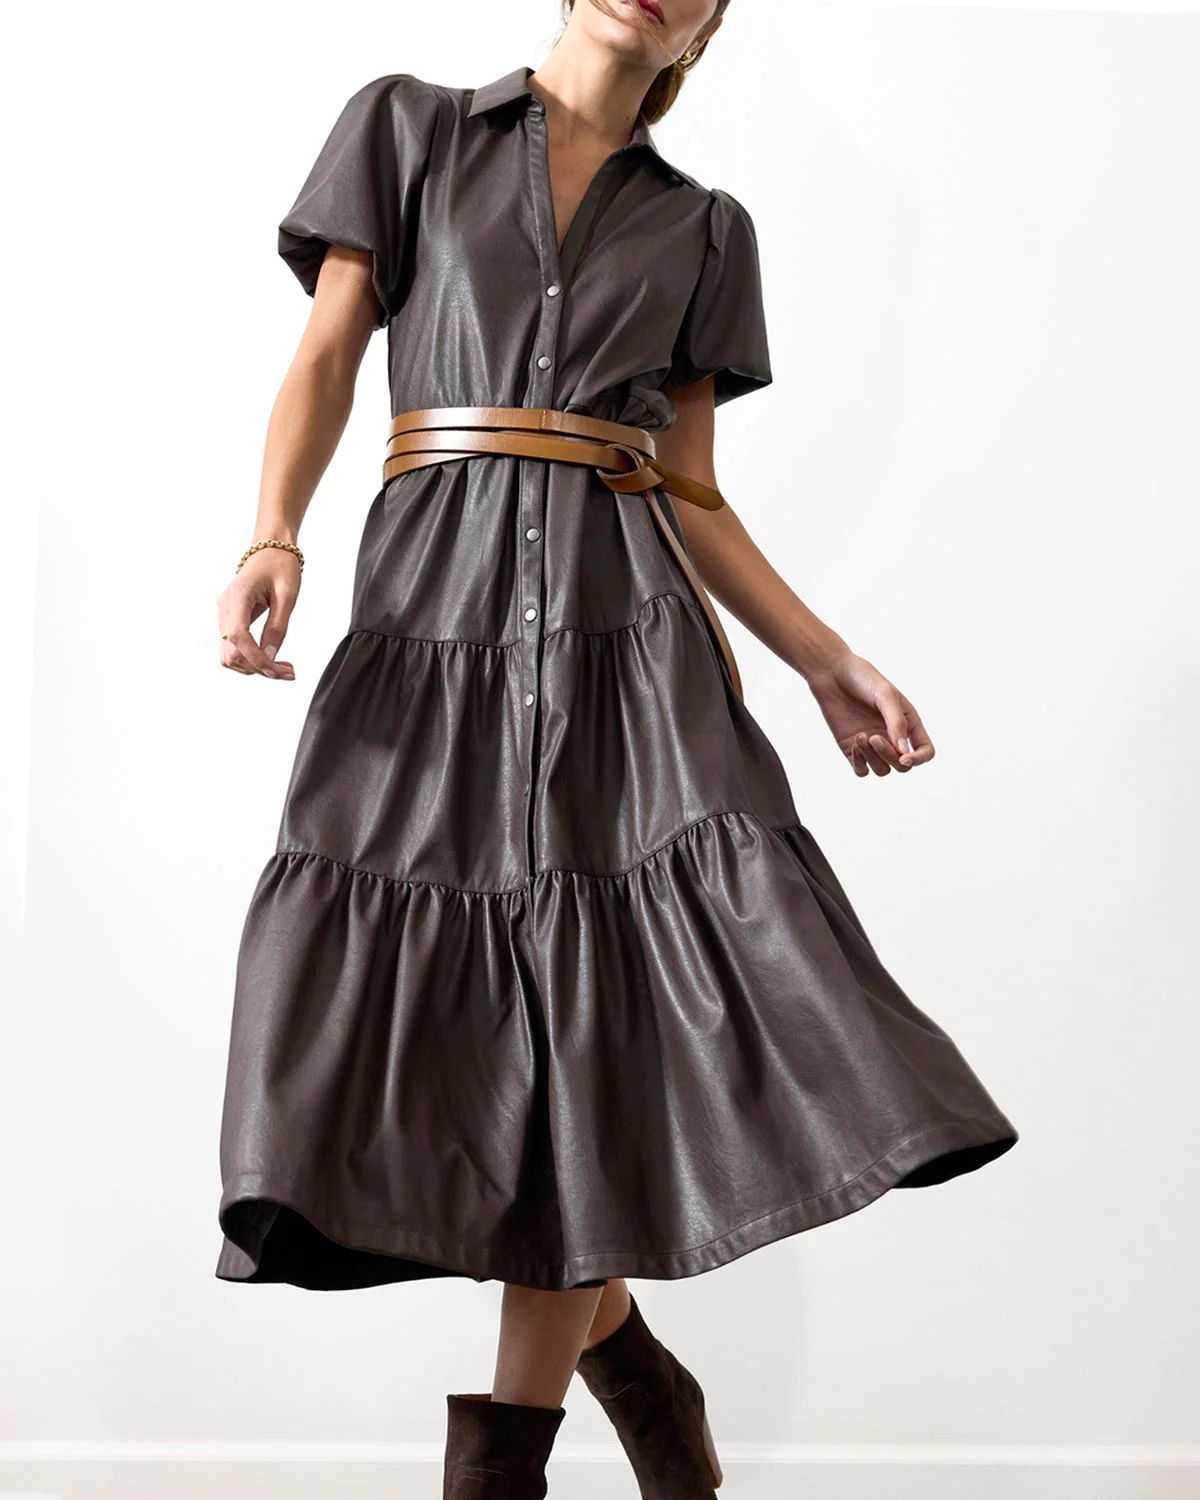 Brochu Walker | Women's Havana Vegan Leather Dress in Timber | Brochu Walker